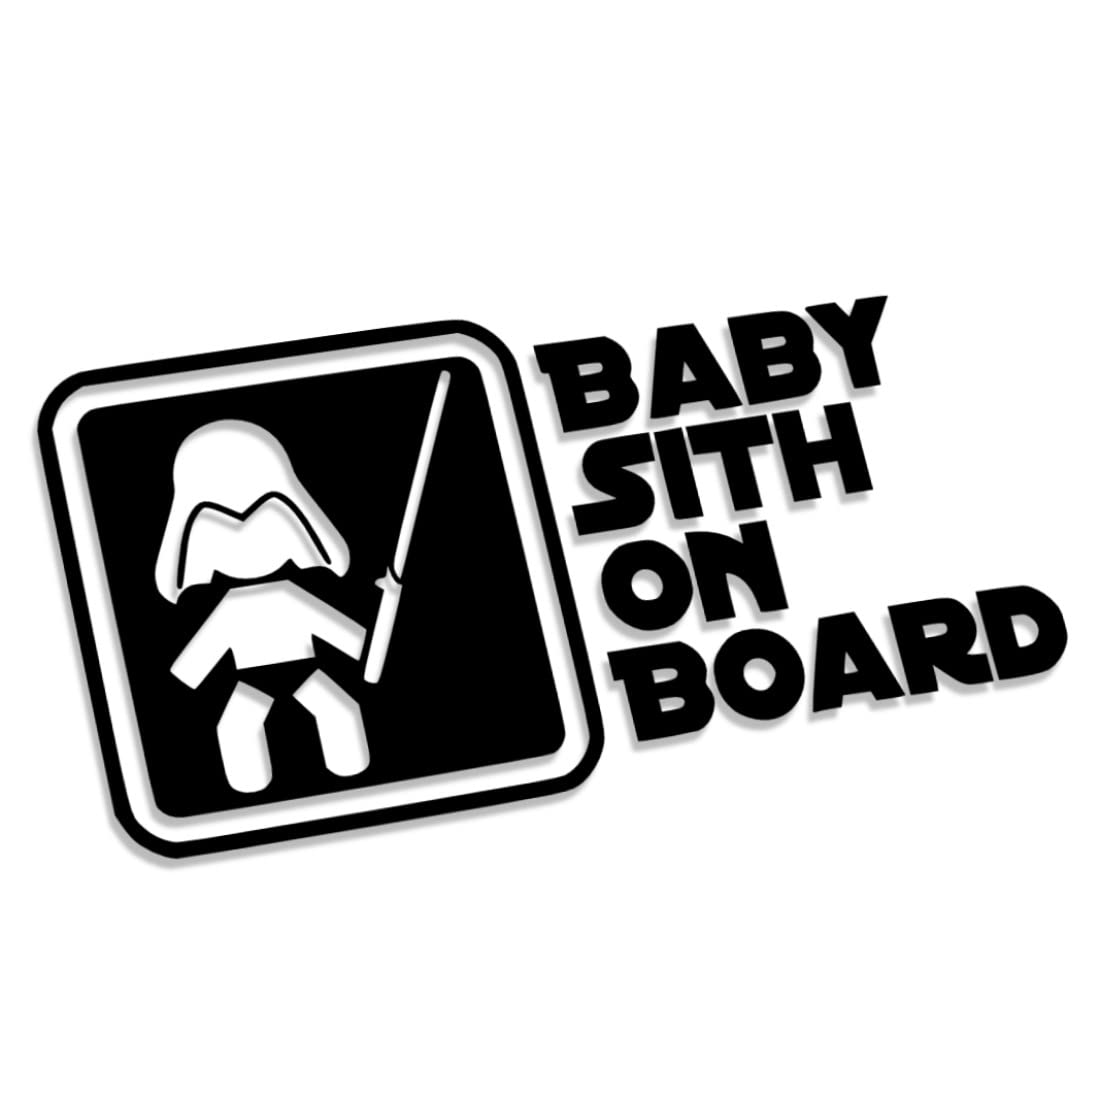 Decus Shop Baby Sith on Board 2707 // Sticker Aufkleber vers. Größe Farbe von Decus Shop